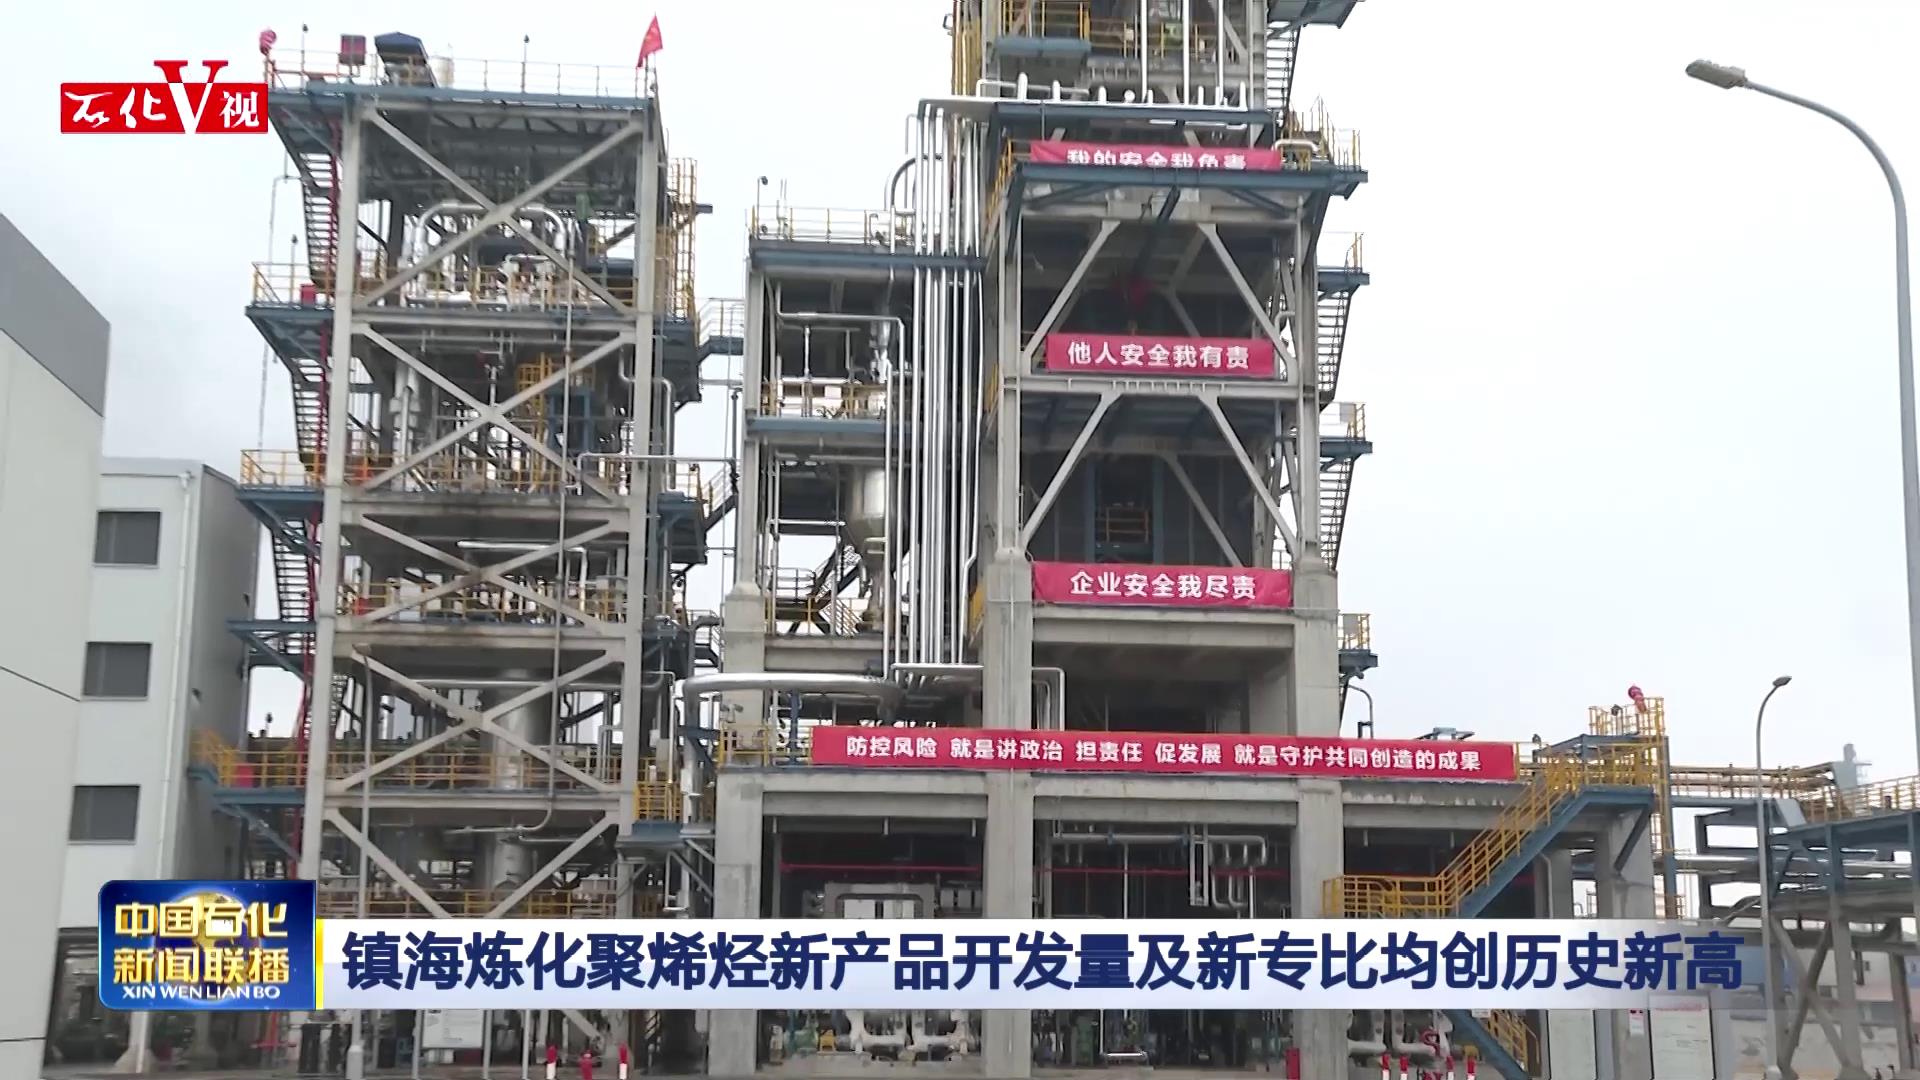 镇海炼化首次成功生产本色透明聚丙烯新产品_中国石化网络视频